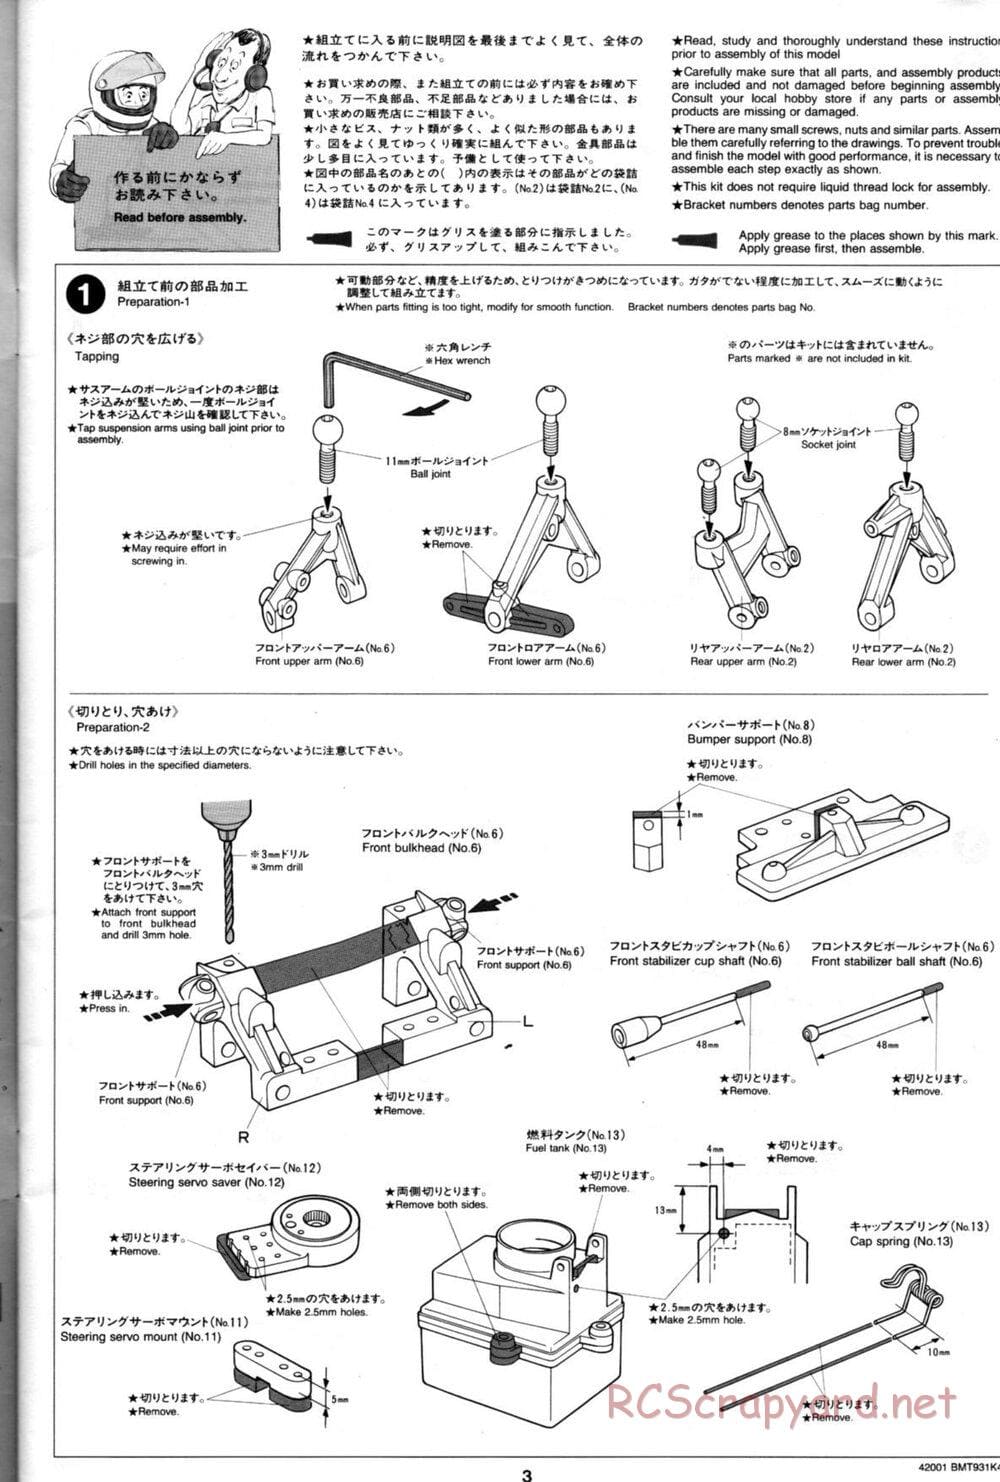 Tamiya - BMT 931 K4 Racing Chassis - Manual - Page 3